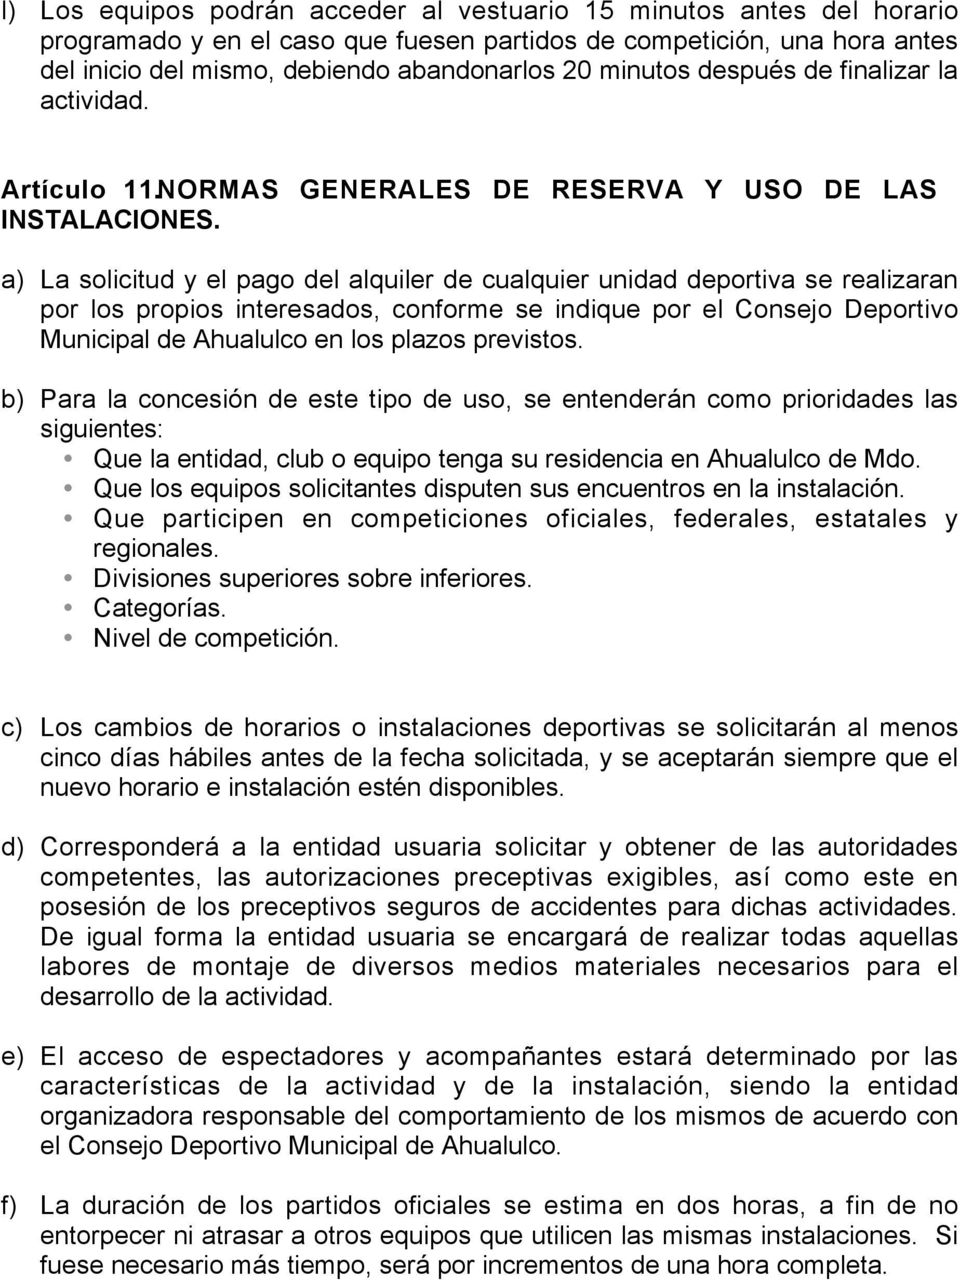 a) La solicitud y el pago del alquiler de cualquier unidad deportiva se realizaran por los propios interesados, conforme se indique por el Consejo Deportivo Municipal de Ahualulco en los plazos